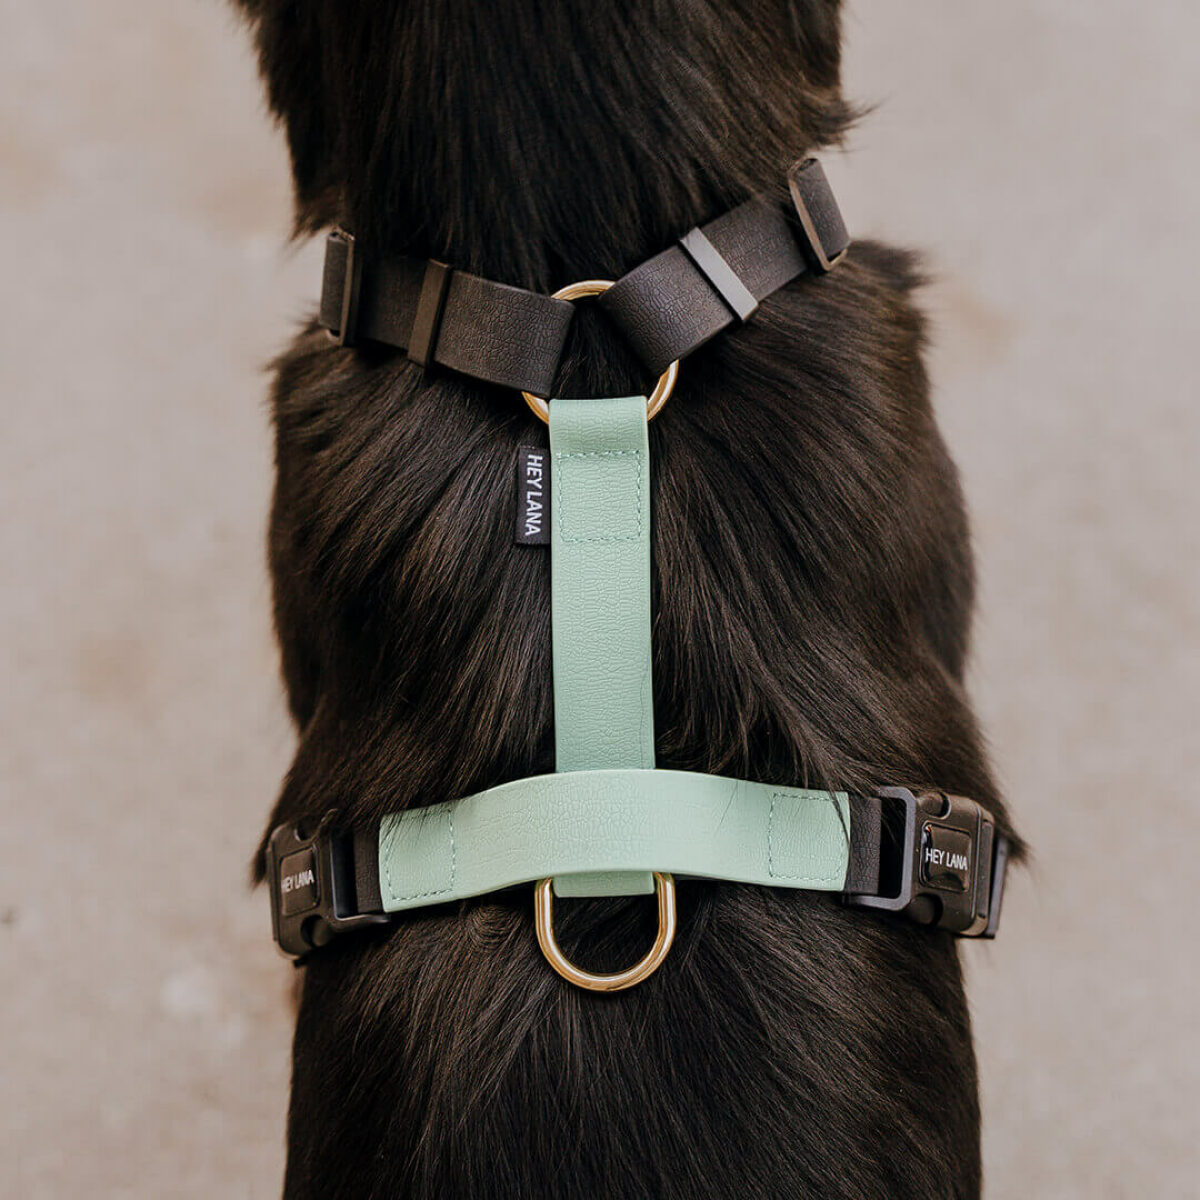 Hunde Führgeschirr Outdoor FLEX ist 5-fach verstellbar mit Haltegriff hinten in Schwarz/Mint